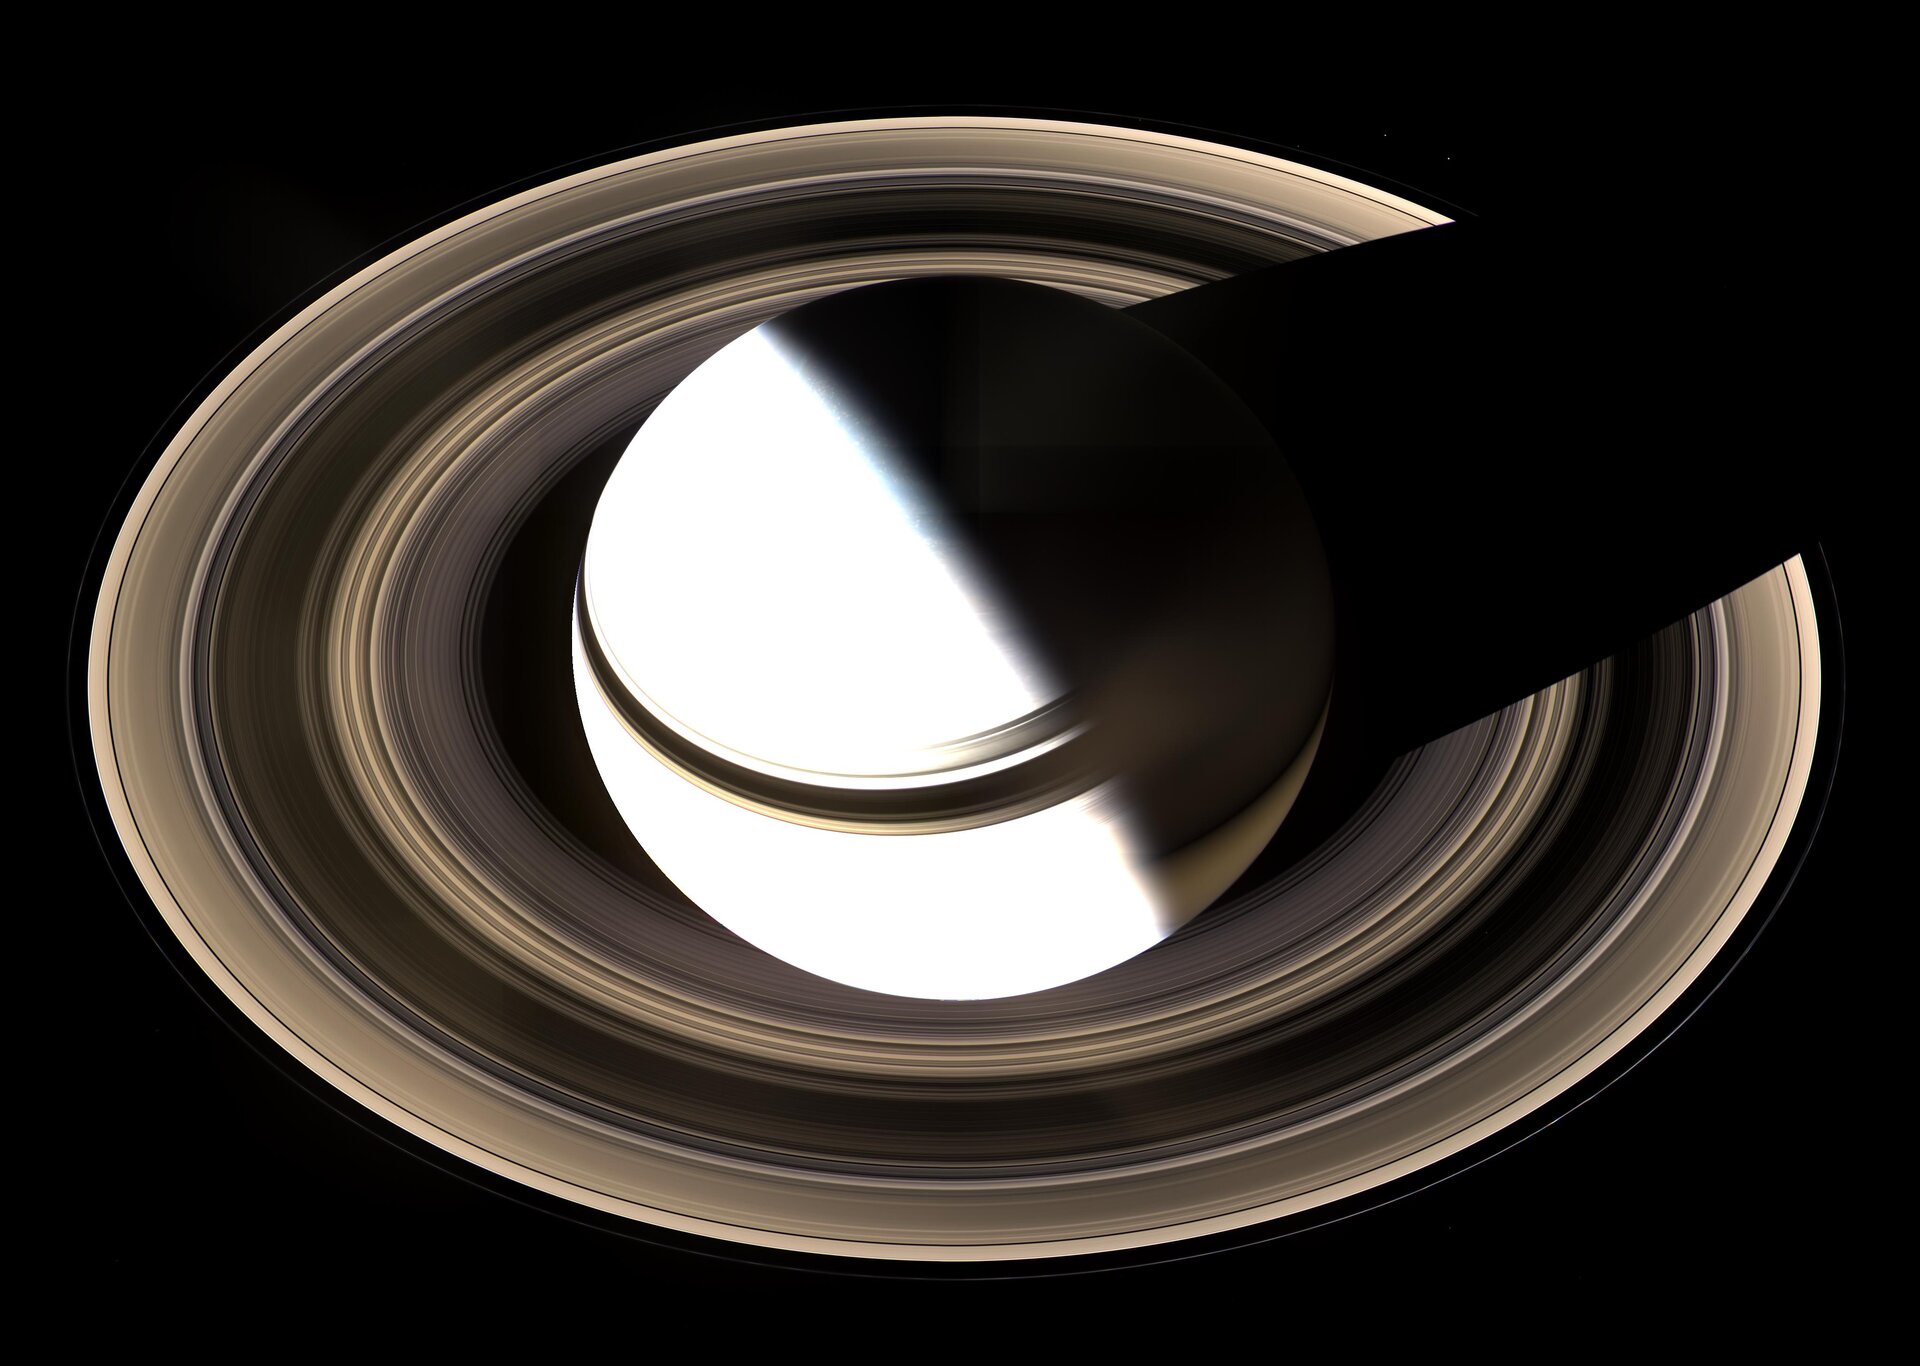 De fascinerende planeet Saturnus met het mooie ringenstelsel